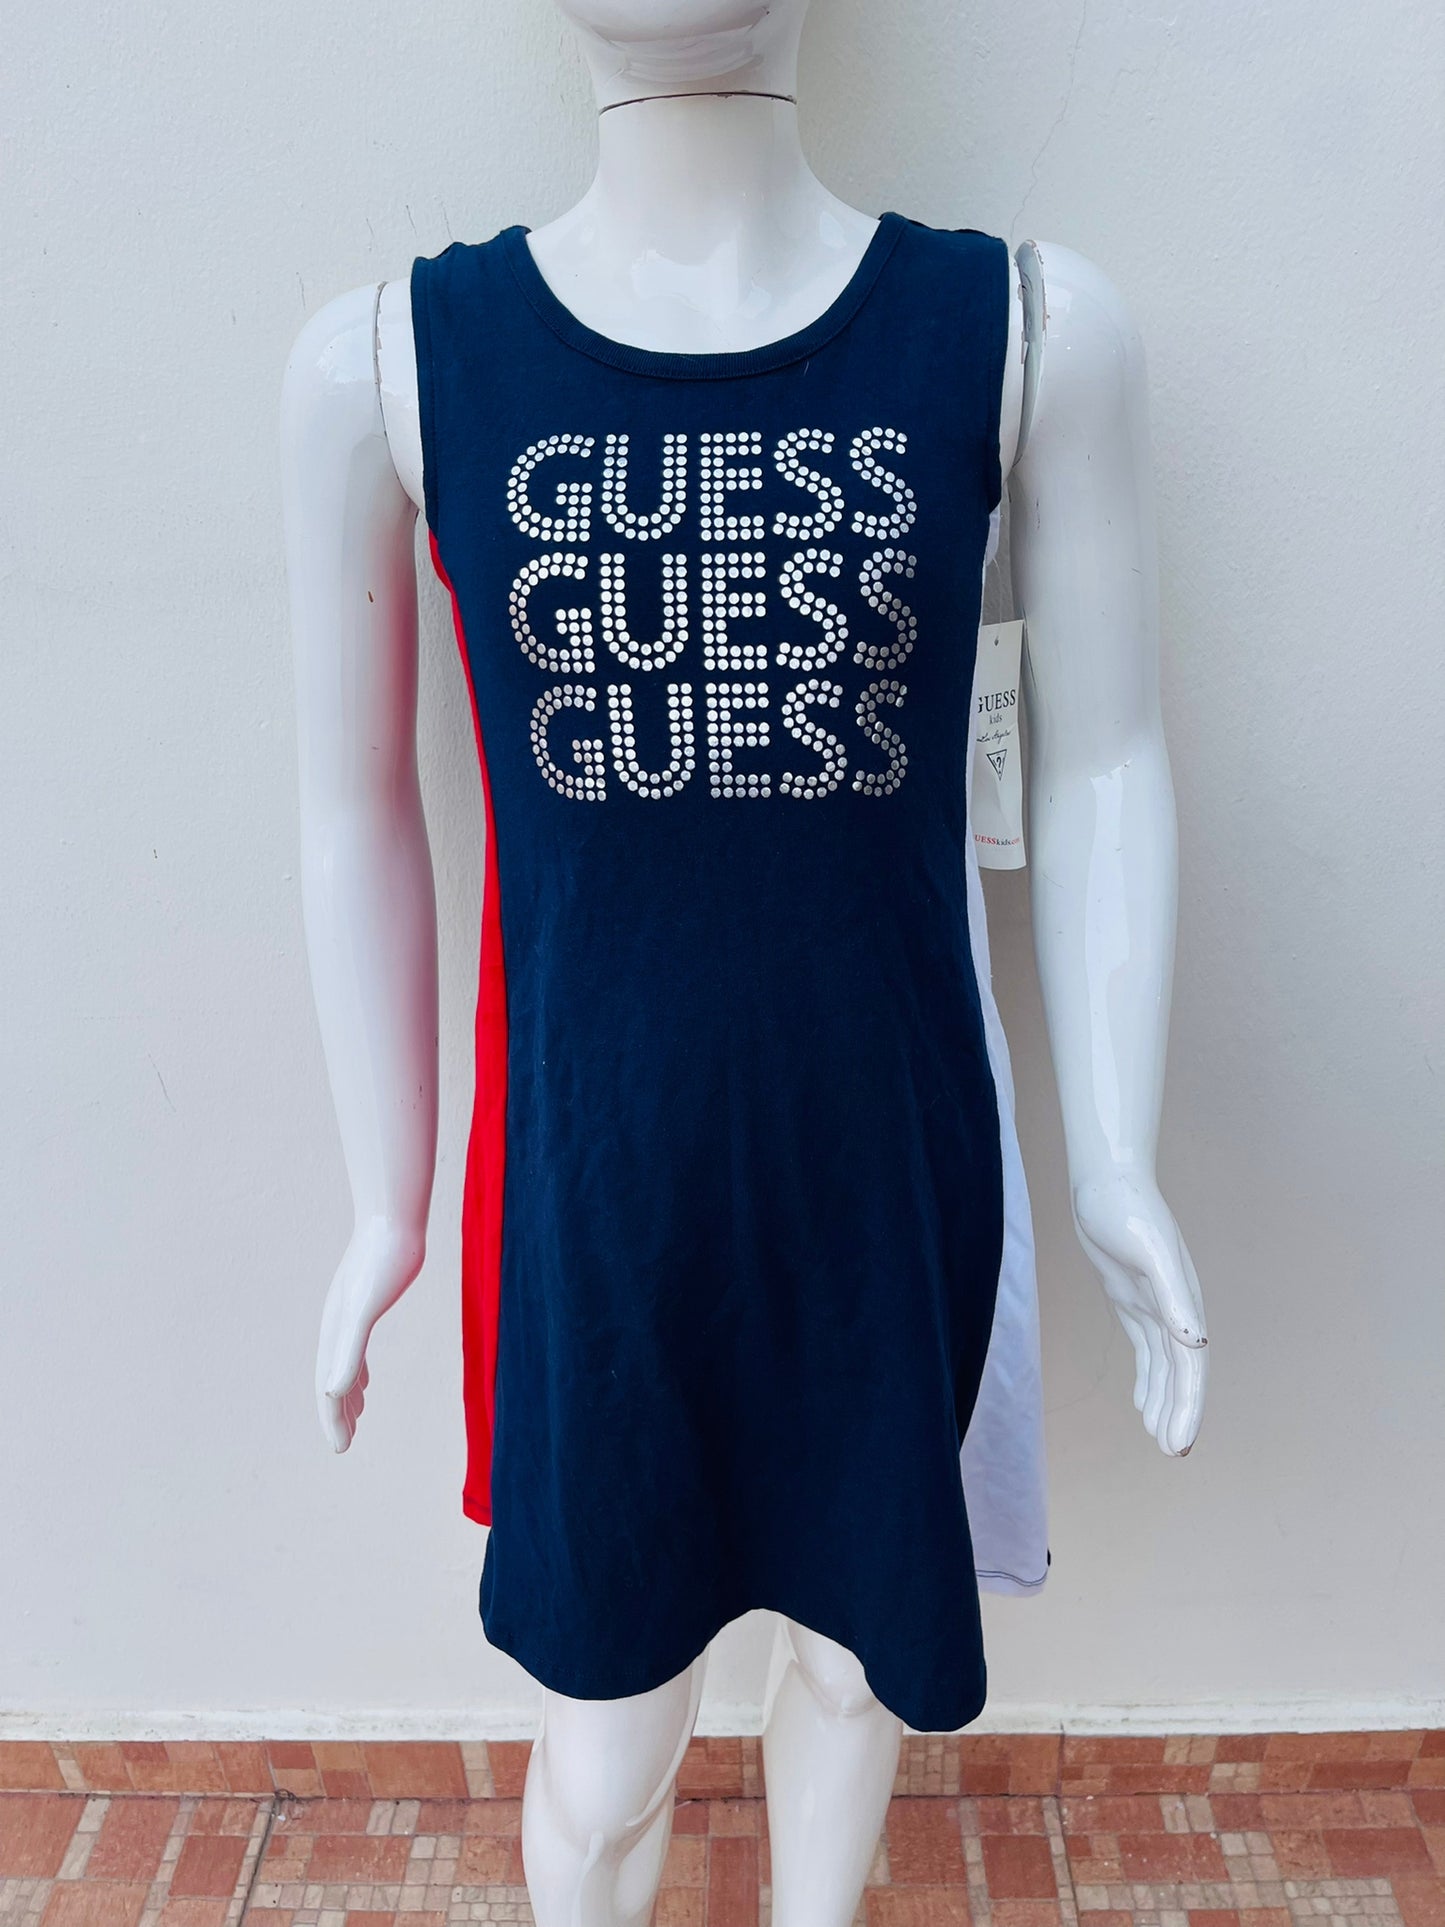 Vestido Guess original de niña de color azul marino con raya blanca y roja a los lados letra GUESS al frente en color plateado